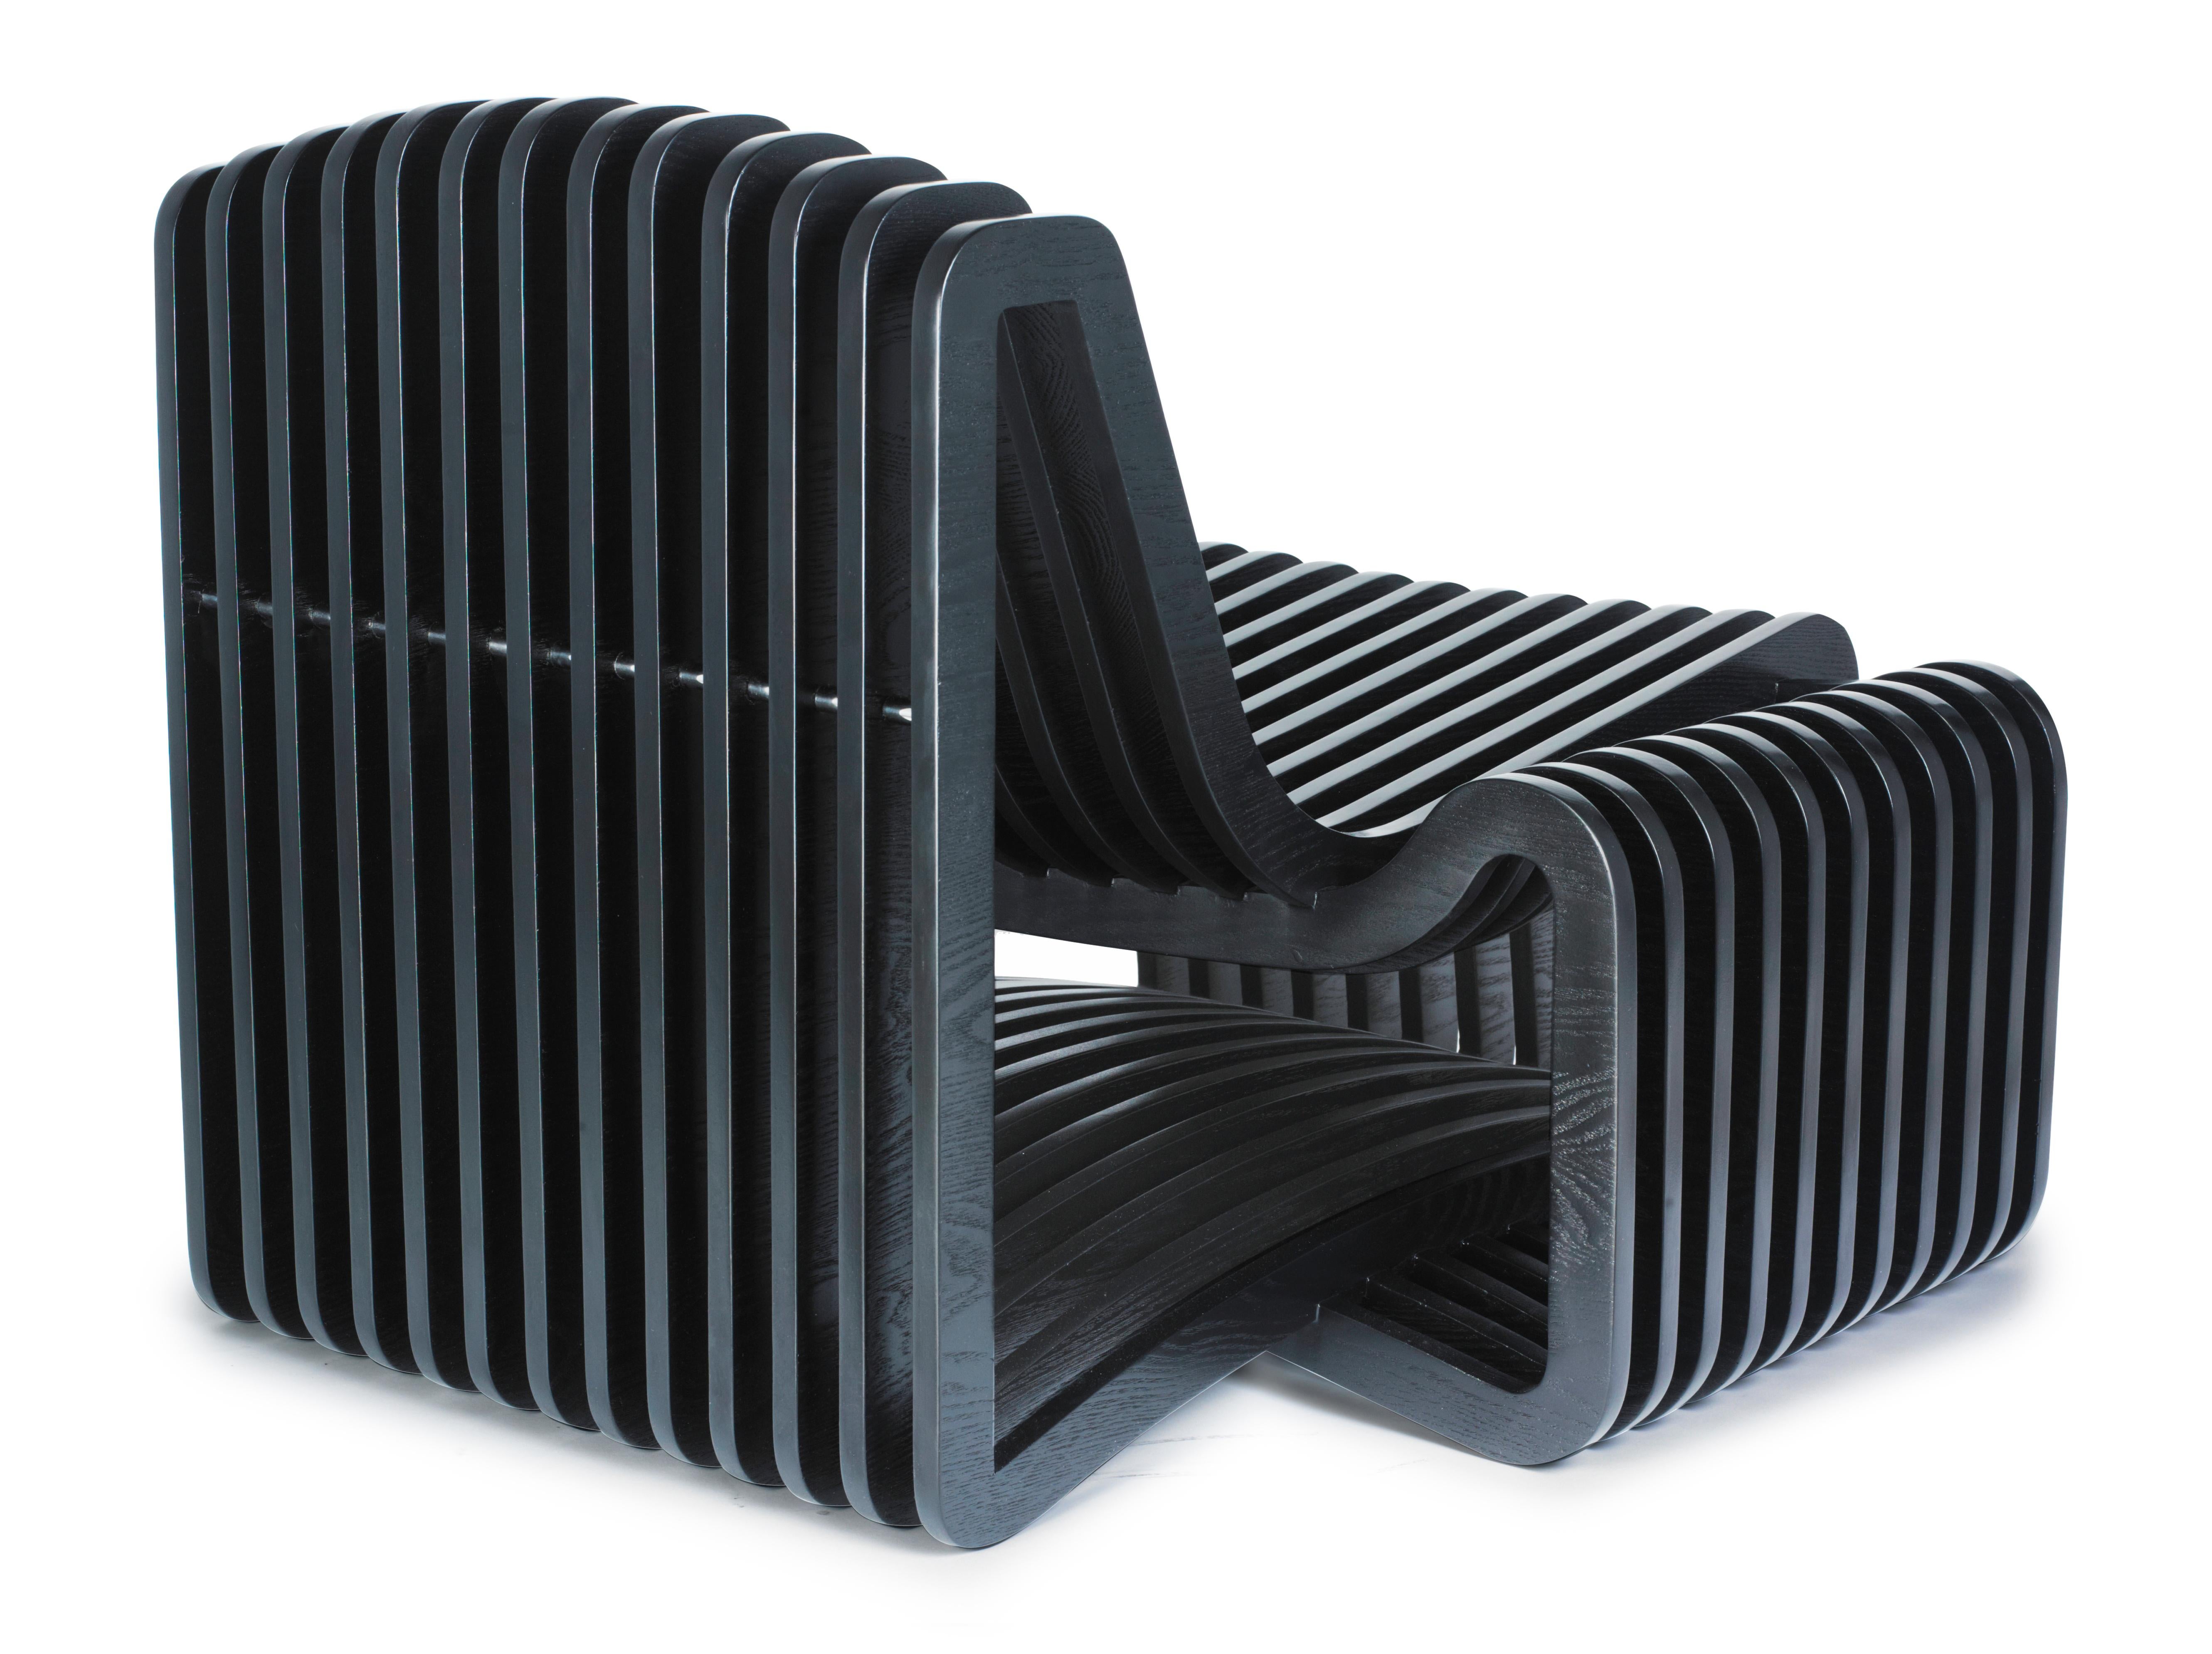 La chaise Arata se distingue par ses courbes séduisantes et le doux rayonnement du bois de pin.Les membres gauche et droit sont des contreparties symétriques, reflétant la forme humaine par leur nature répétitive. Ils possèdent un sentiment de